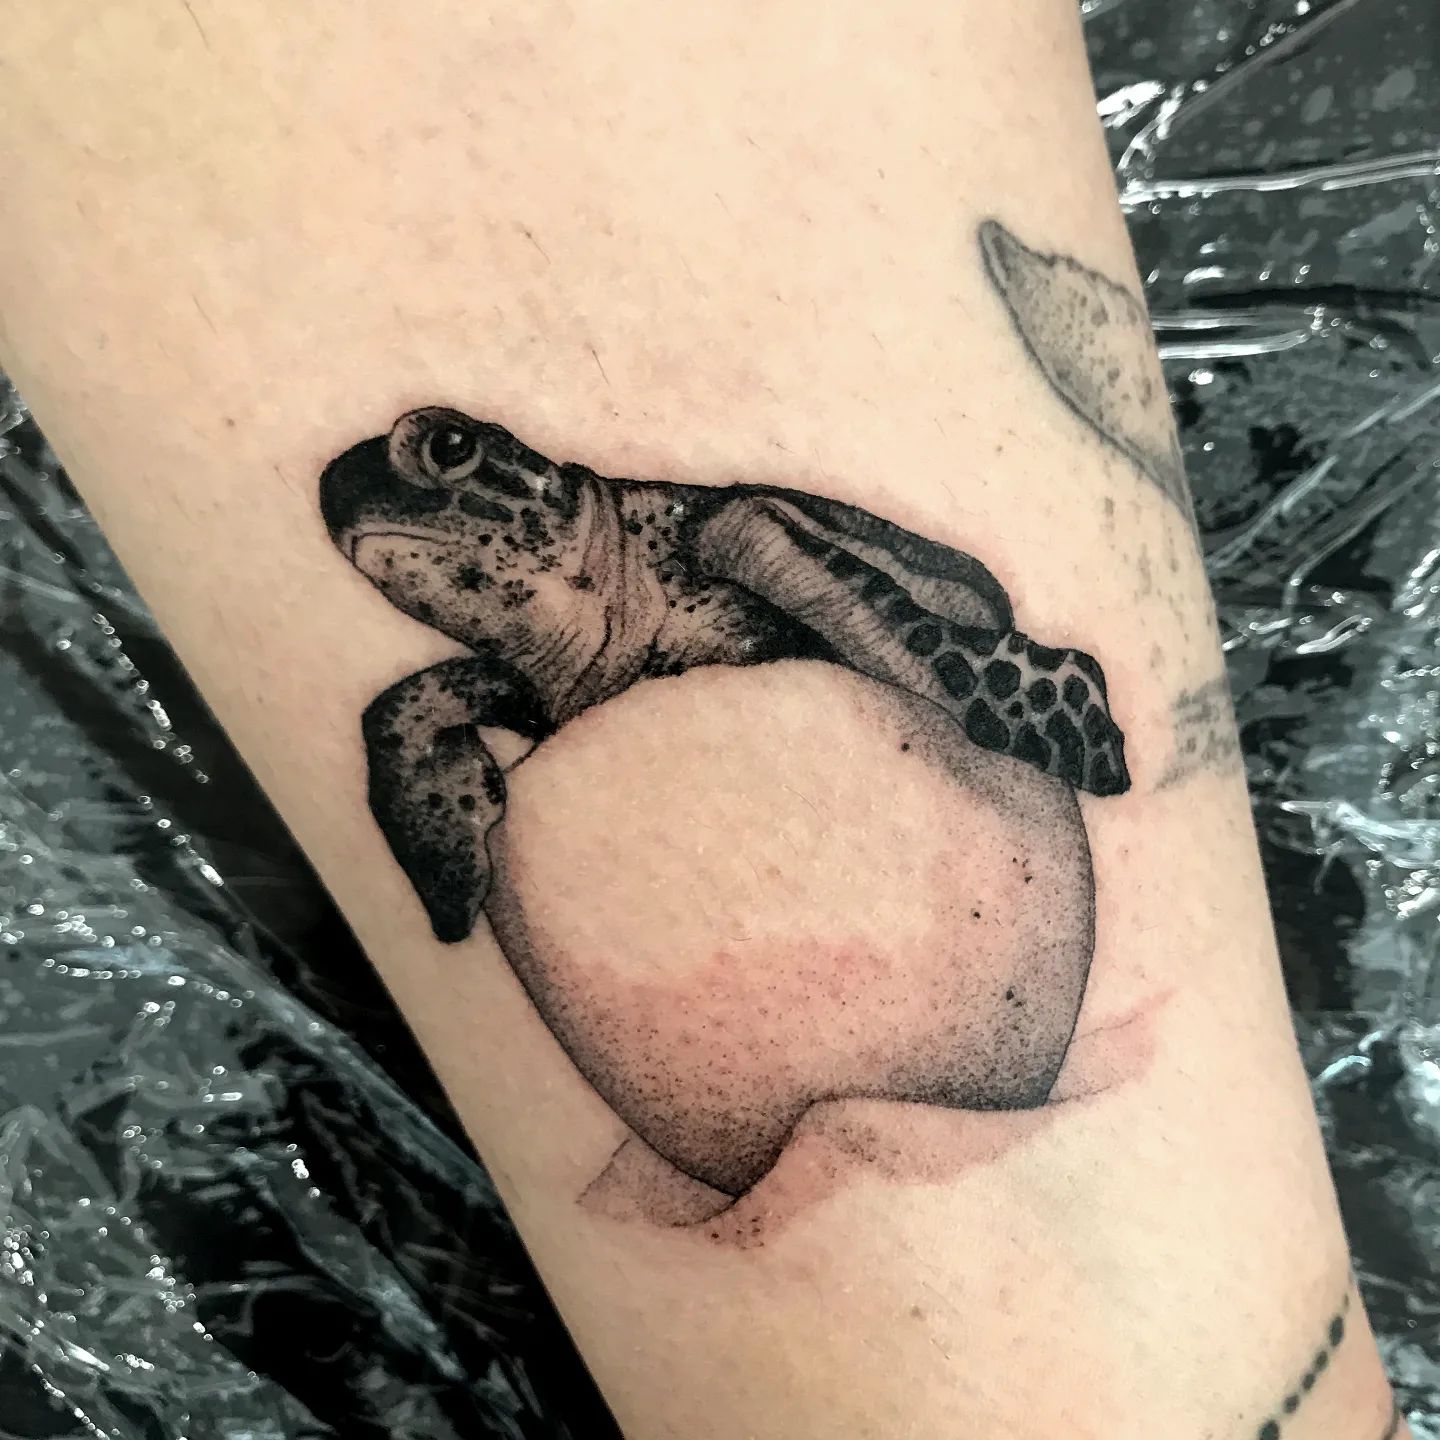 Tatuaje de tortuga marina para bebé con técnica de puntos